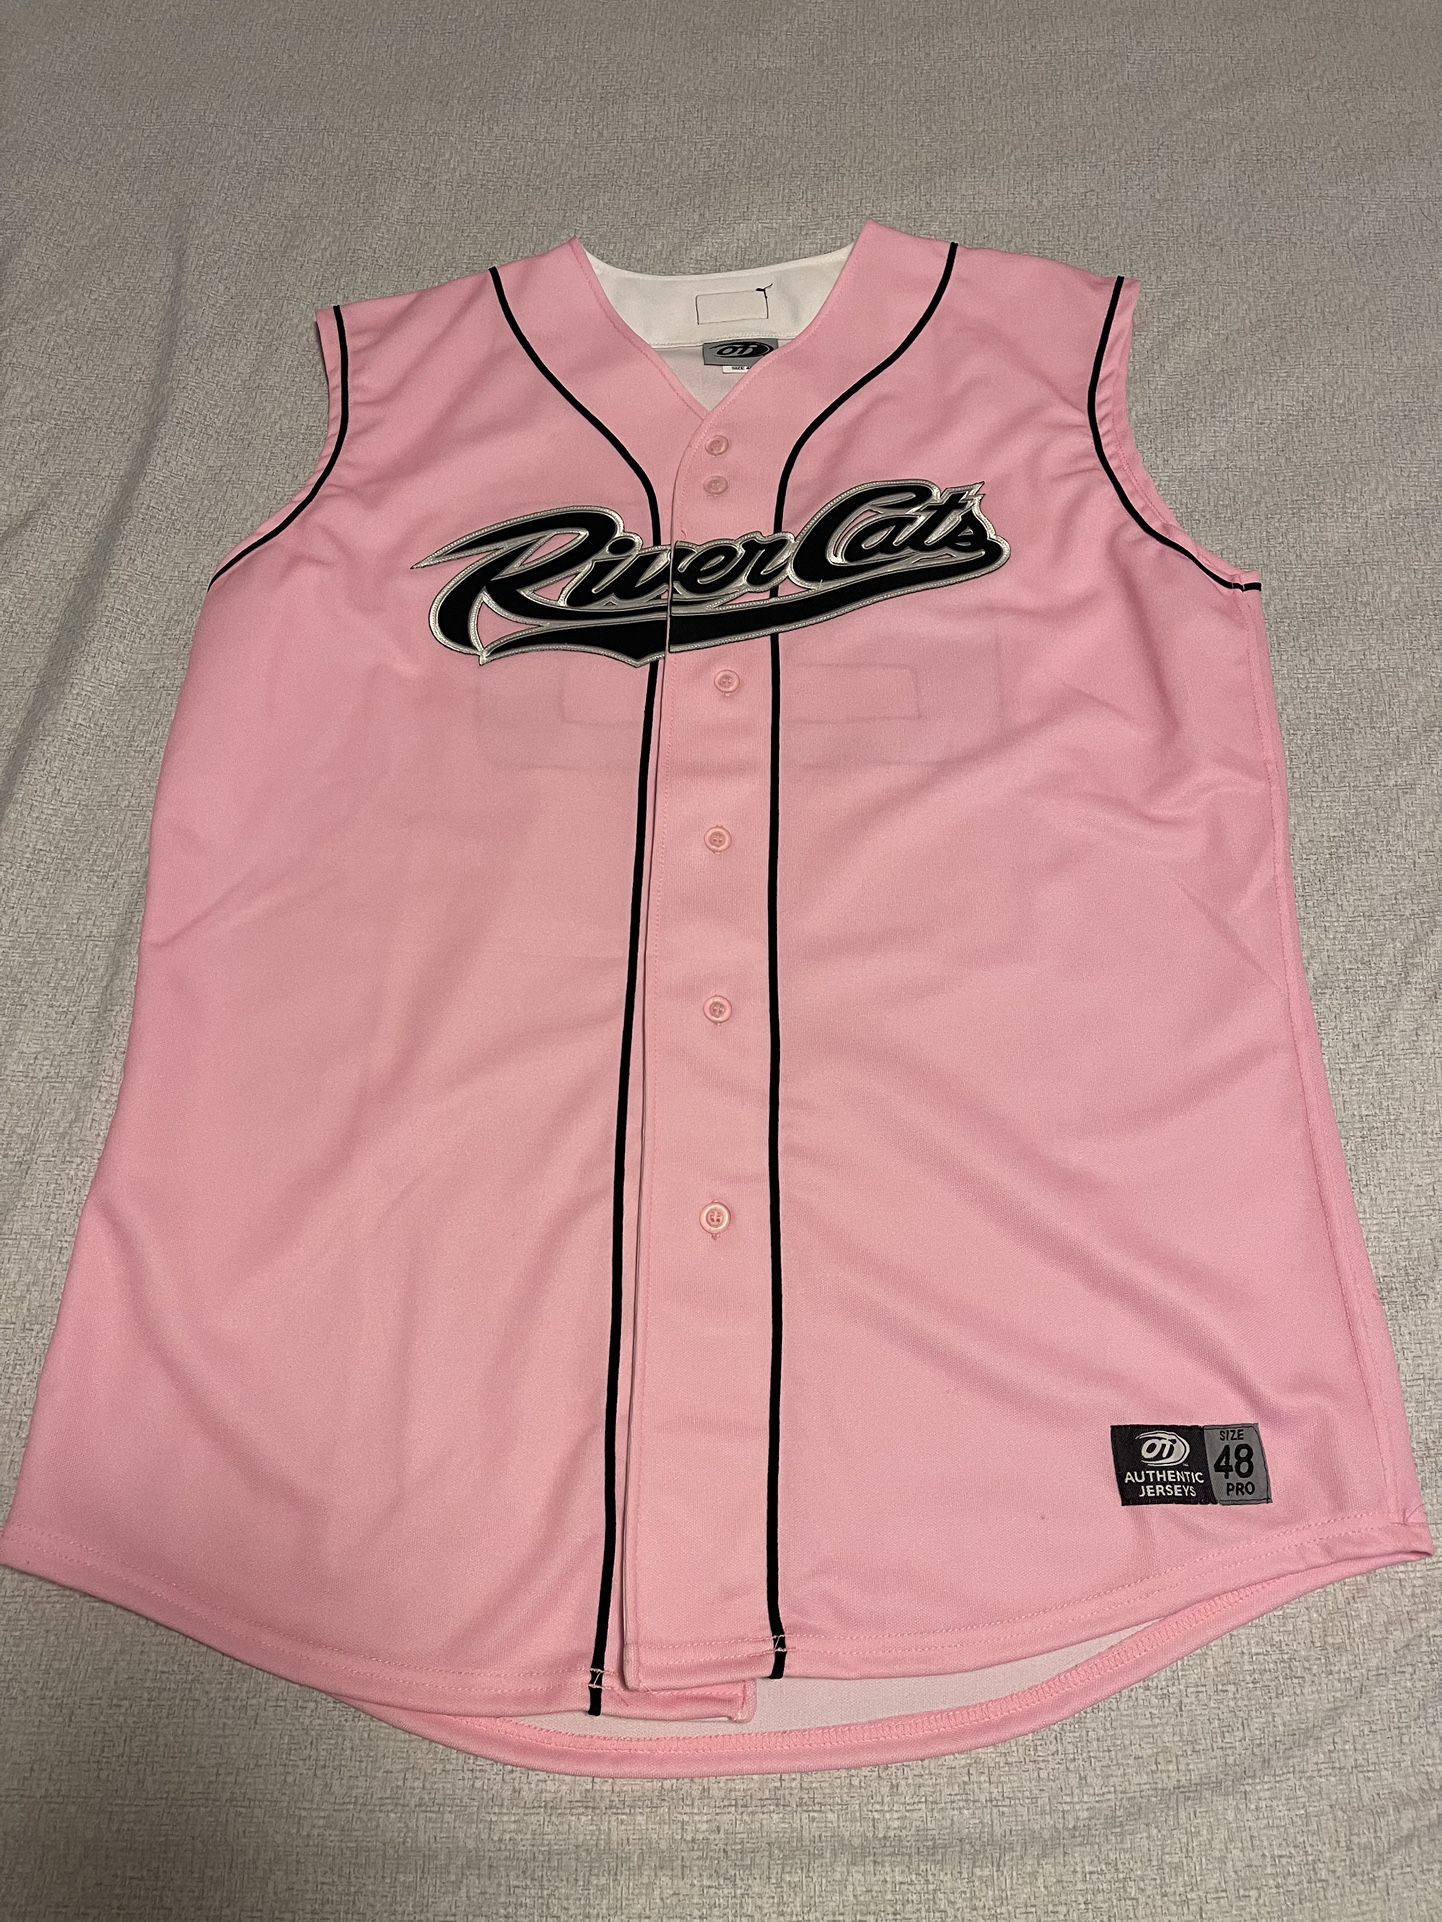 Sacramento River Cats Size 48 Pink Baseball Jersey #23 OT Sports Vintage